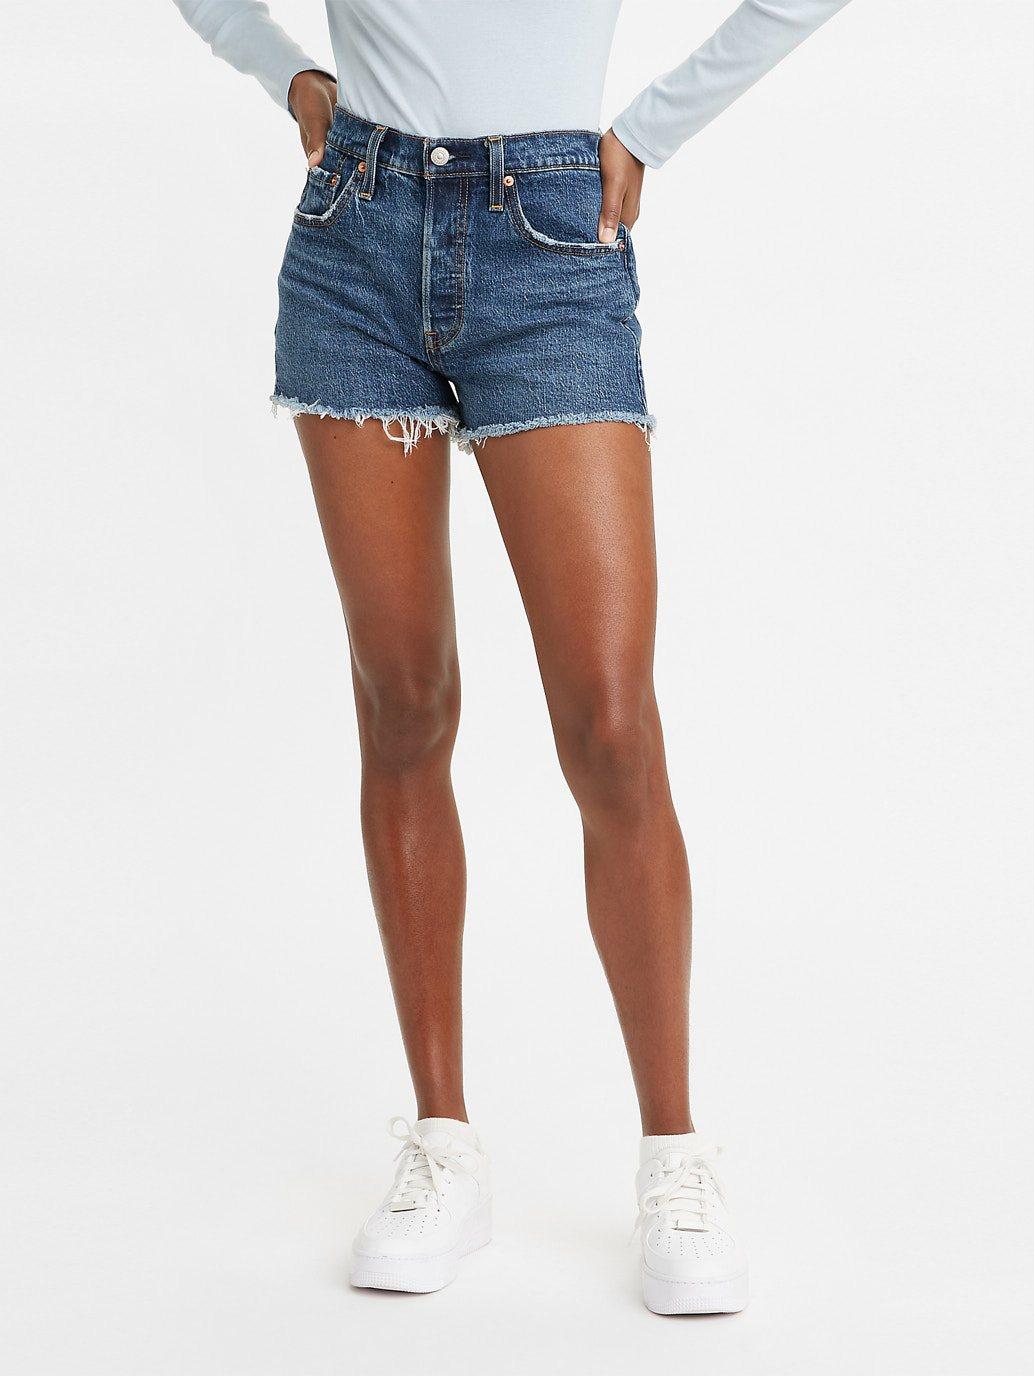 Buy Levi's® Women's 501® Original High-Rise Jean Shorts | Levis ...